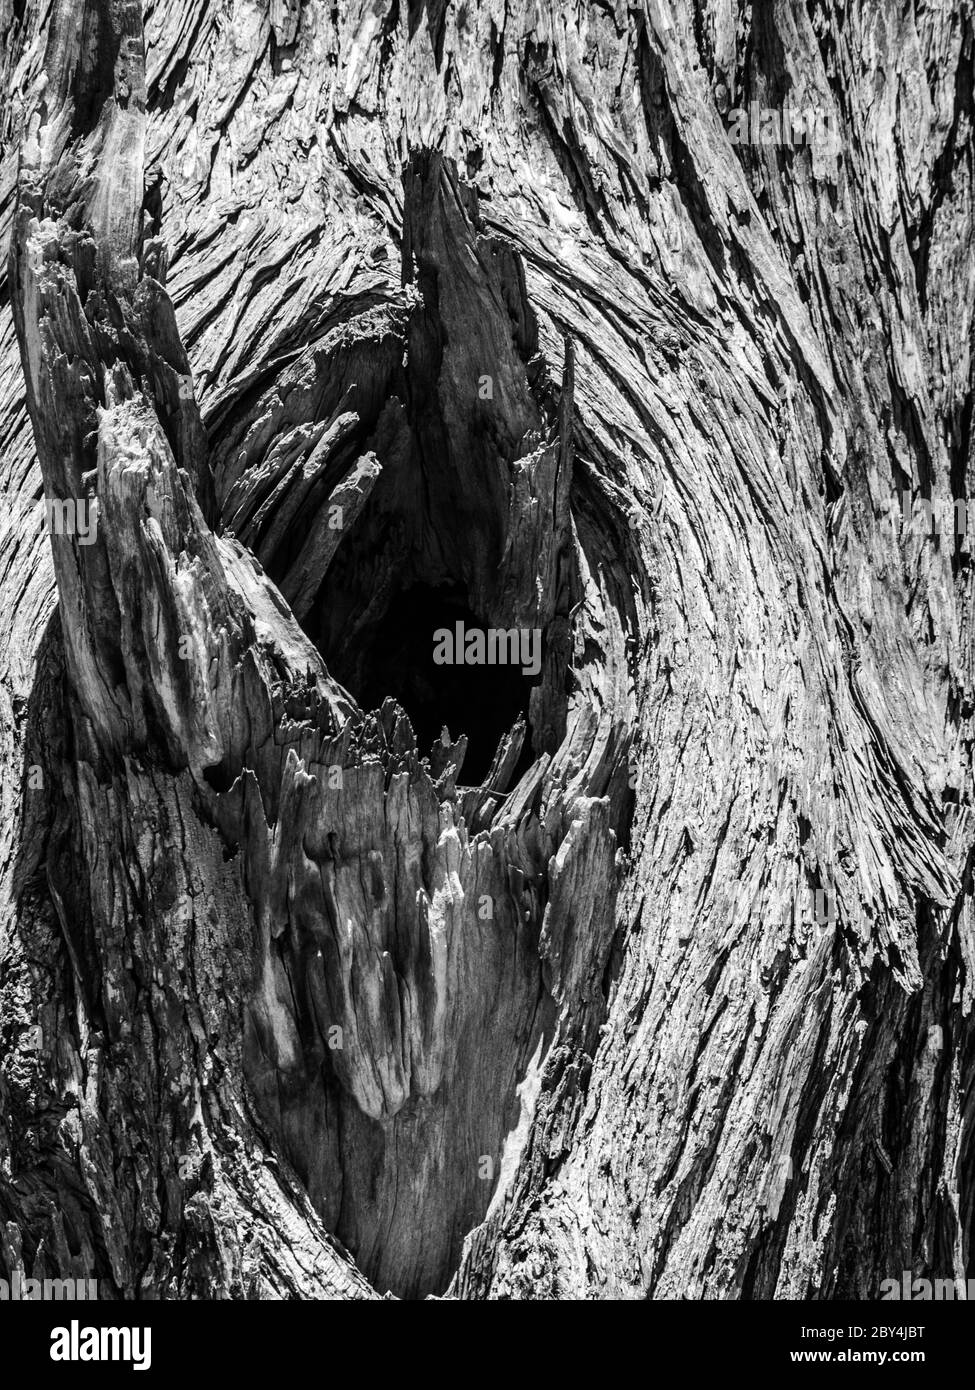 Nœud de vieux arbre sec (texture en bois) Banque D'Images